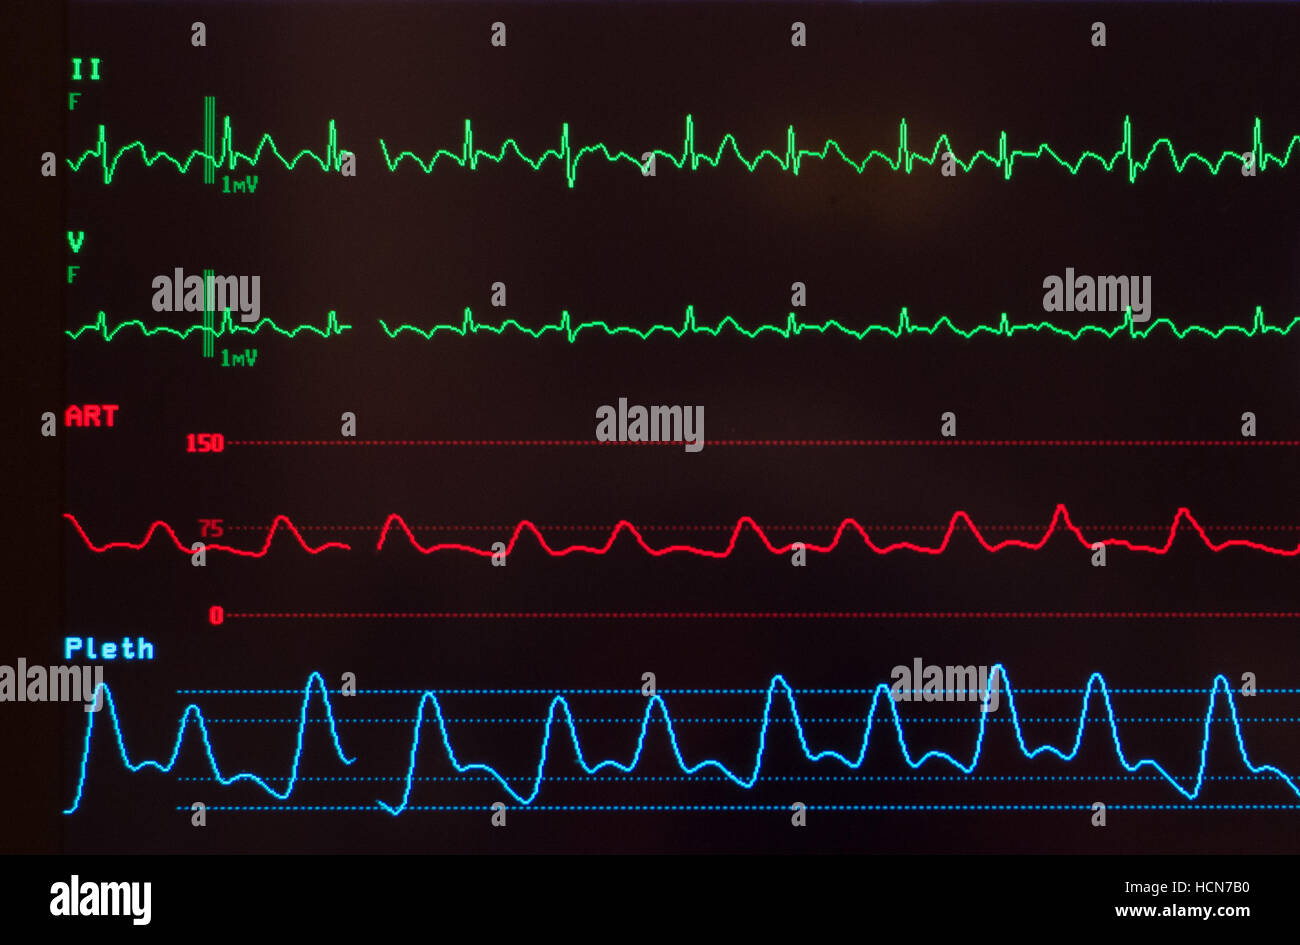 Nahaufnahme von medizinischer Monitor mit EKG mit Vorhofflimmern flattern, arterieller Blutdruck Welle und Sauerstoff Sättigung Niveau gegen Schwarz Stockfoto